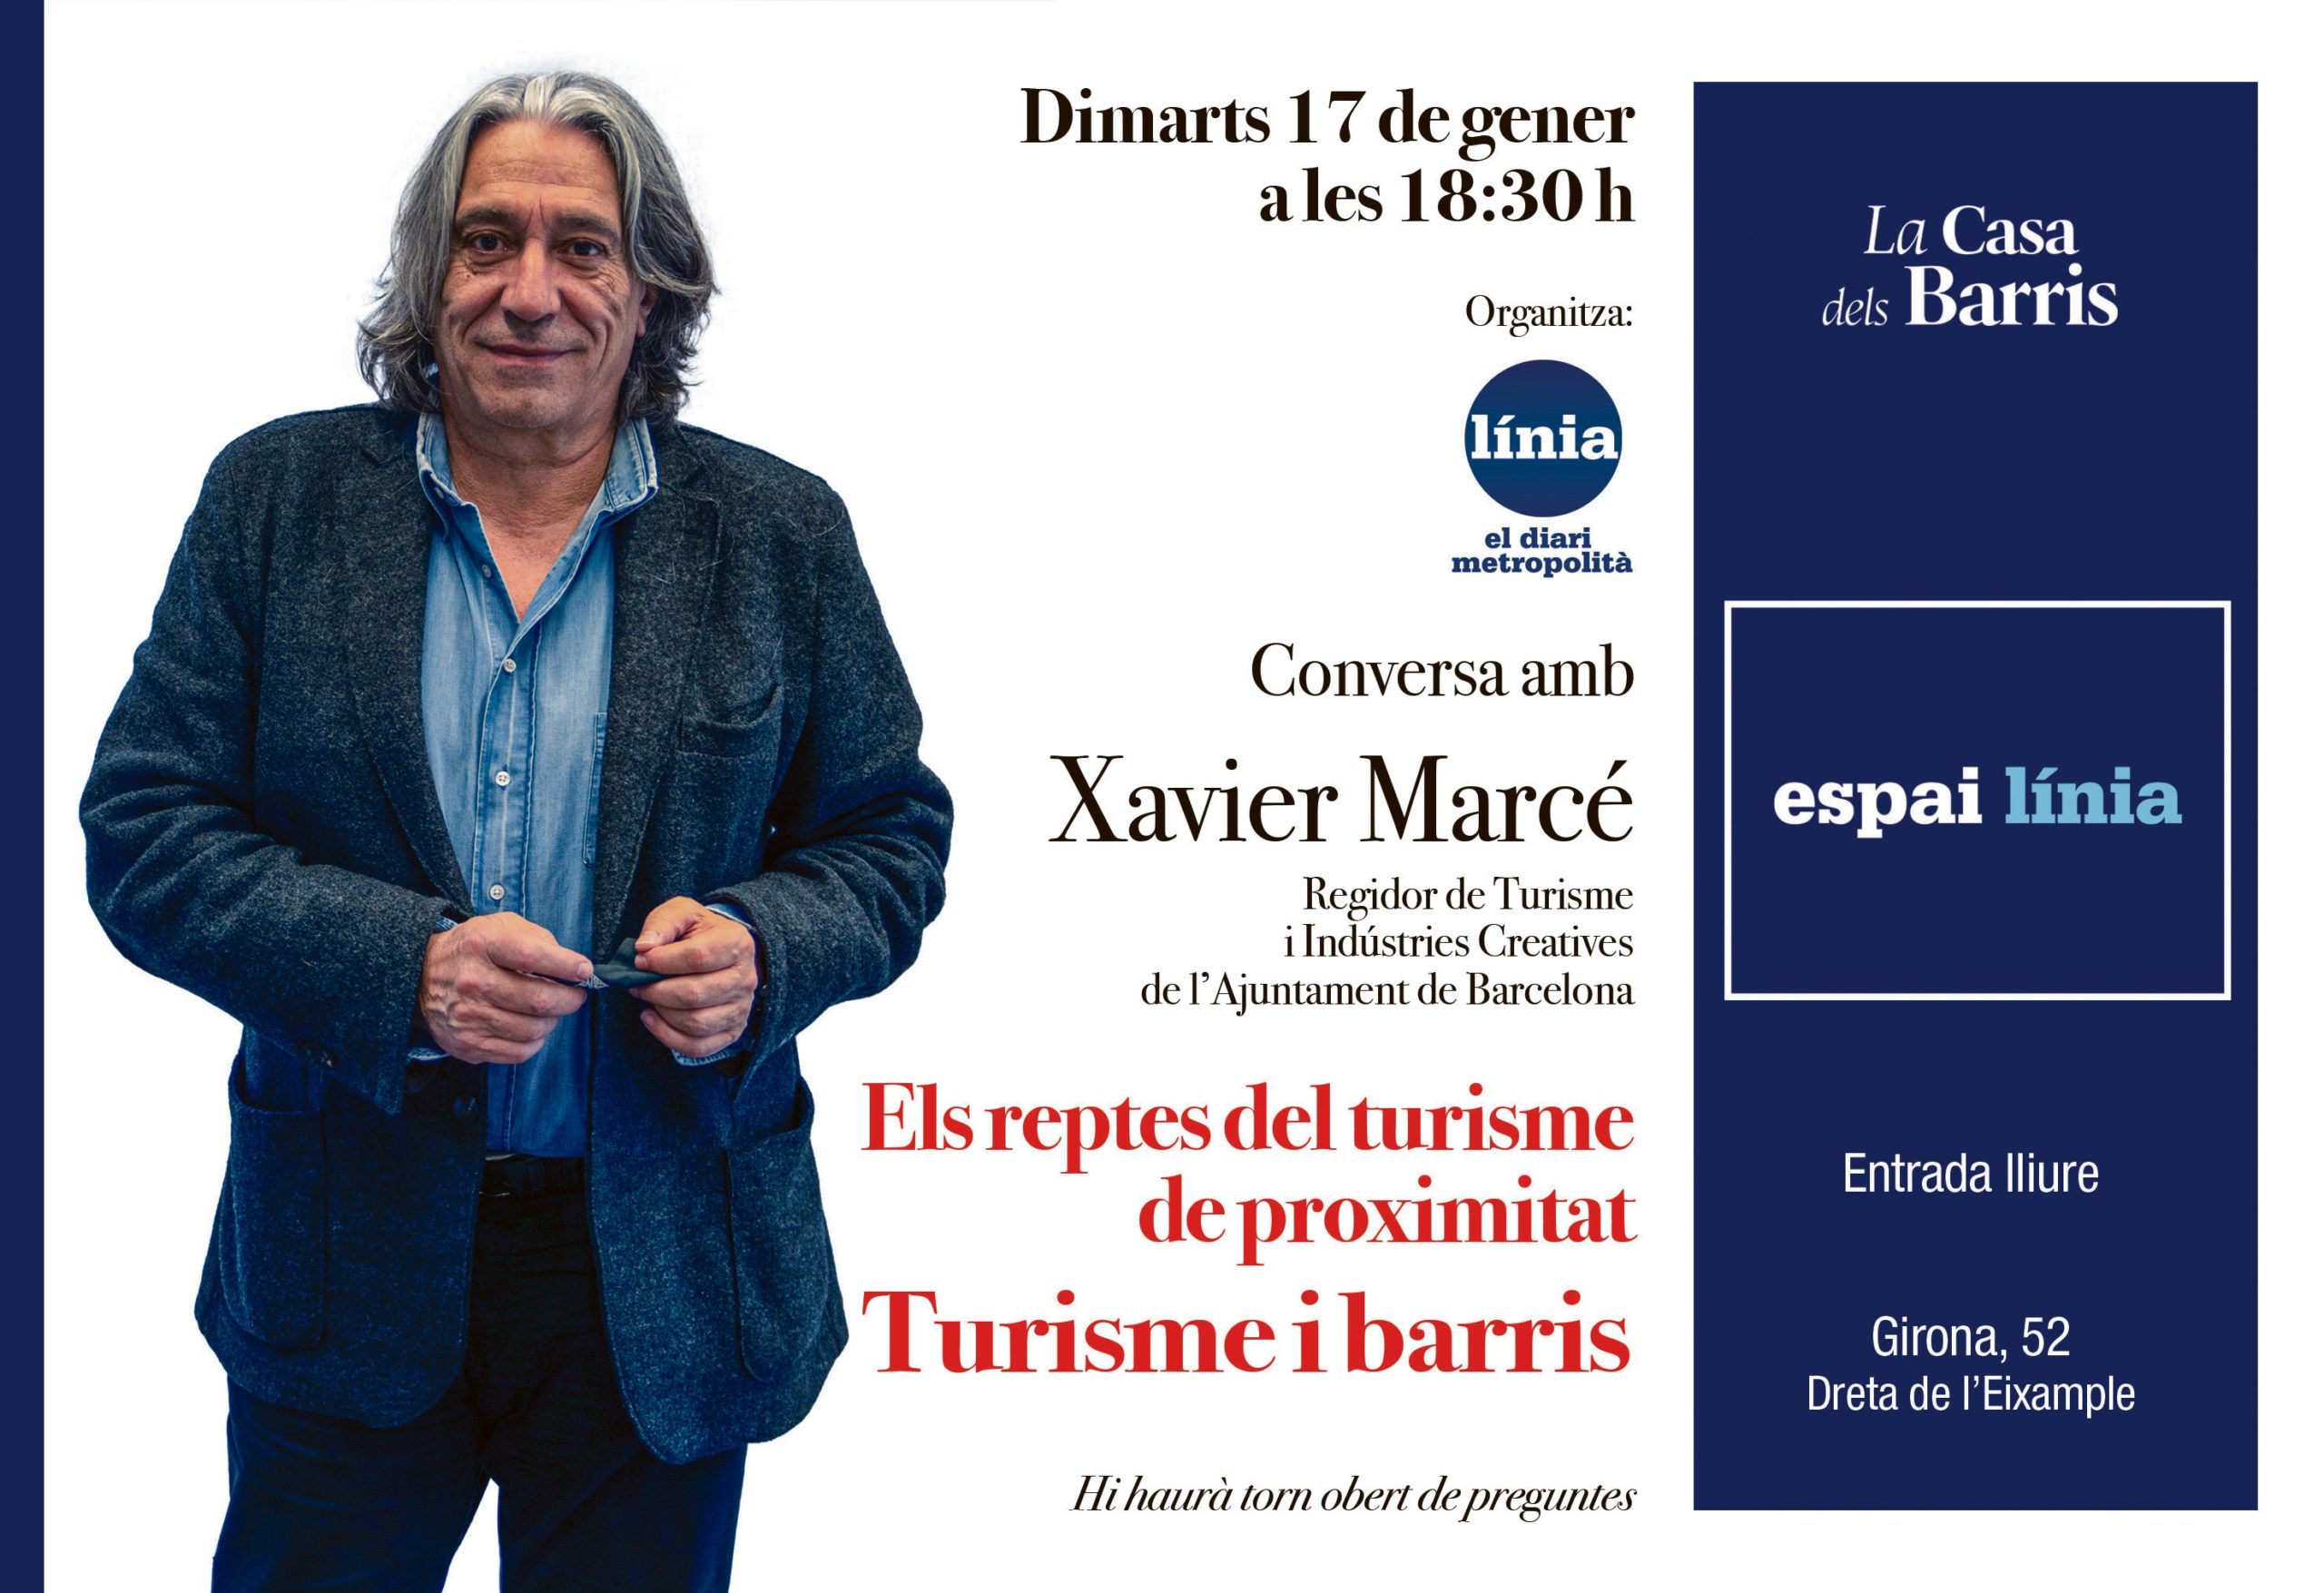 Conversa amb Xavier Marcé sobre 'Turisme i barris' el 17 de gener